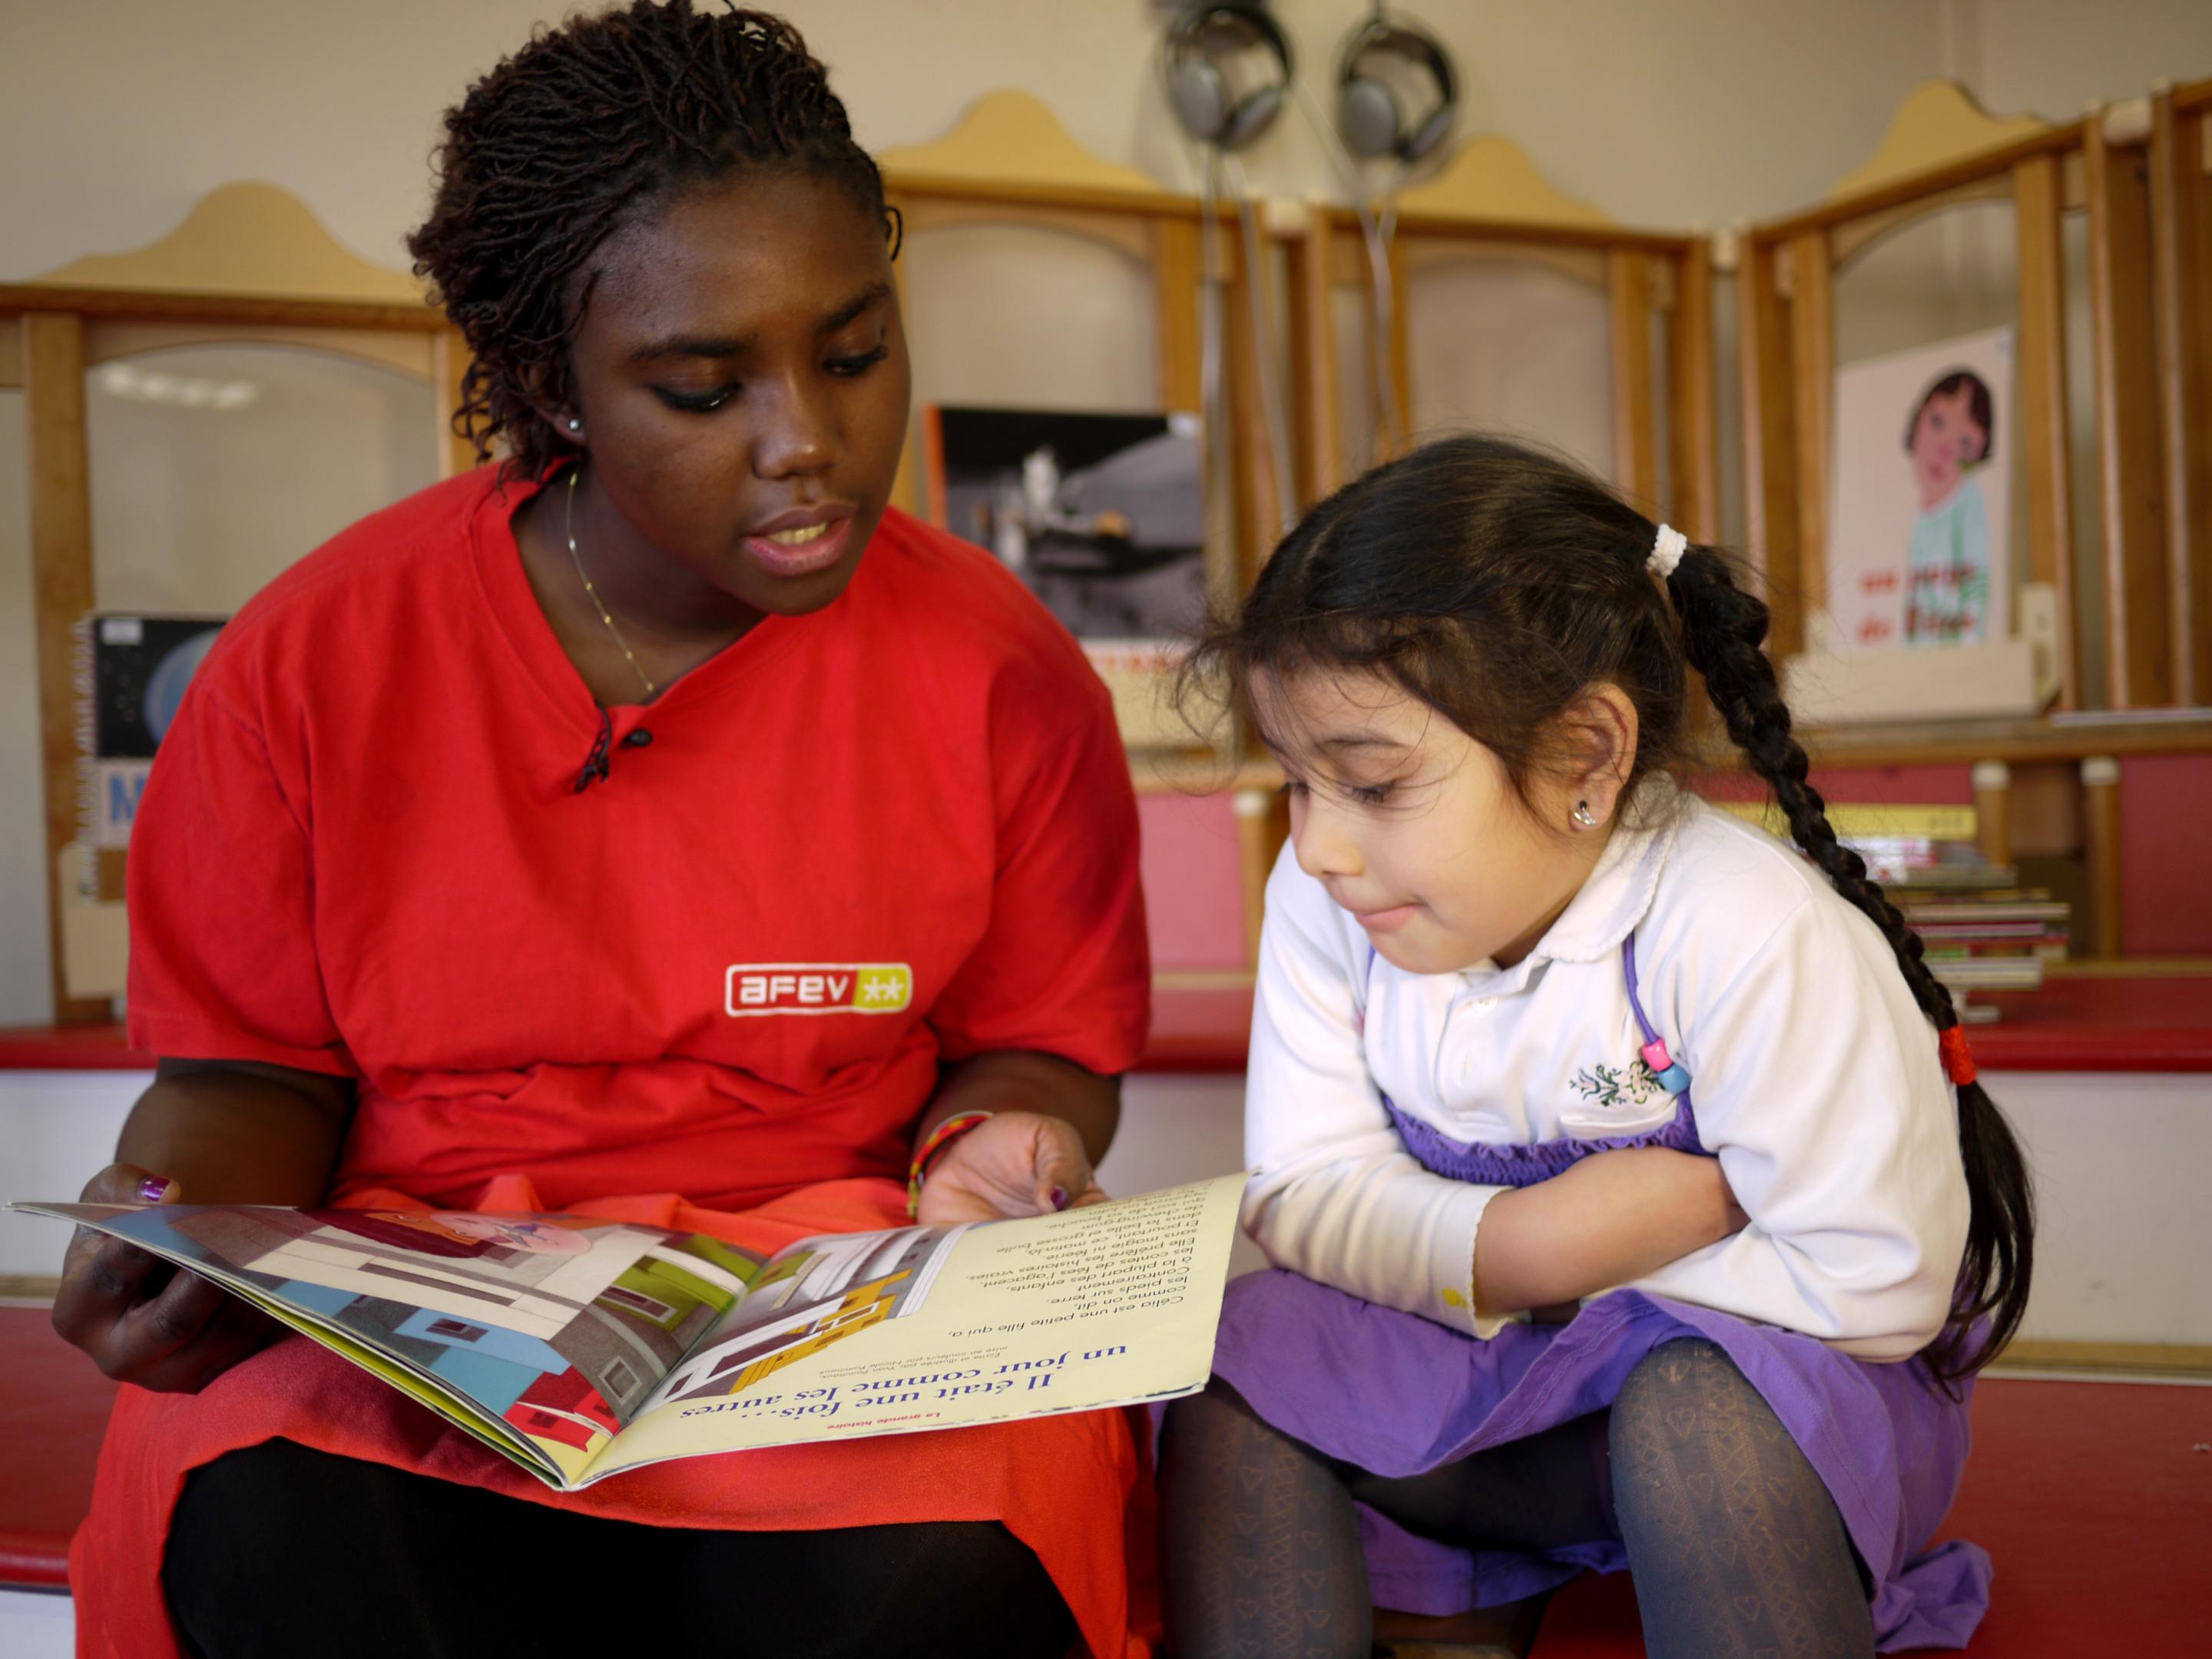 Etudiante faisant la lecture à une enfant